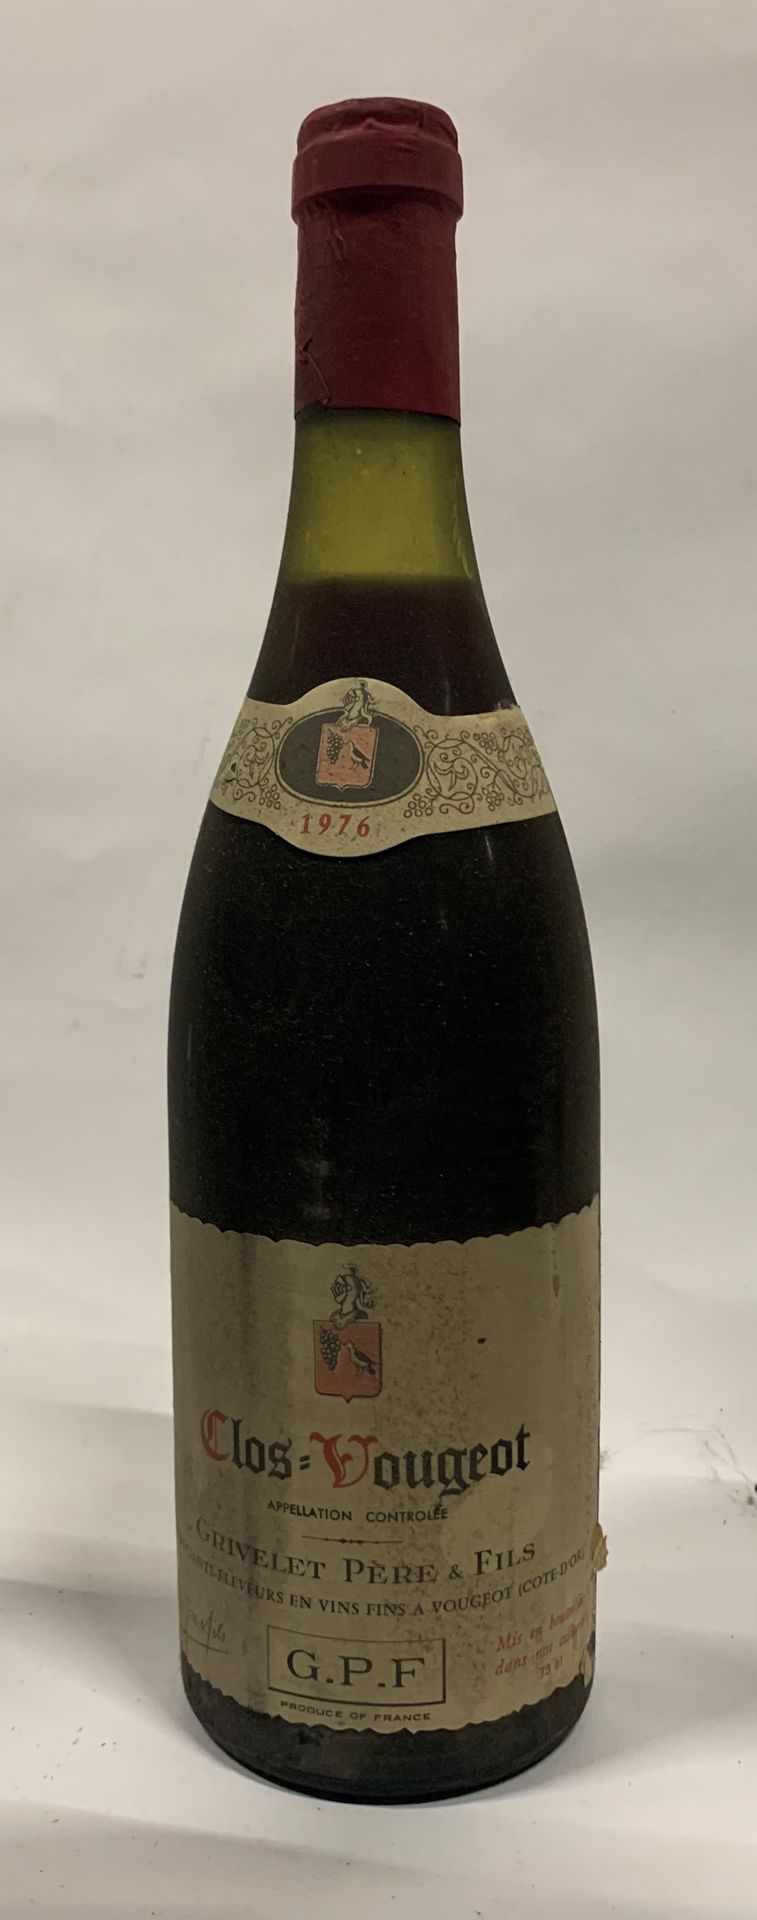 Null ● CLOS-VOUGEOT | Grivelet Père & Fils, 1976

11 bouteilles (3LB, 7MB, B - E&hellip;